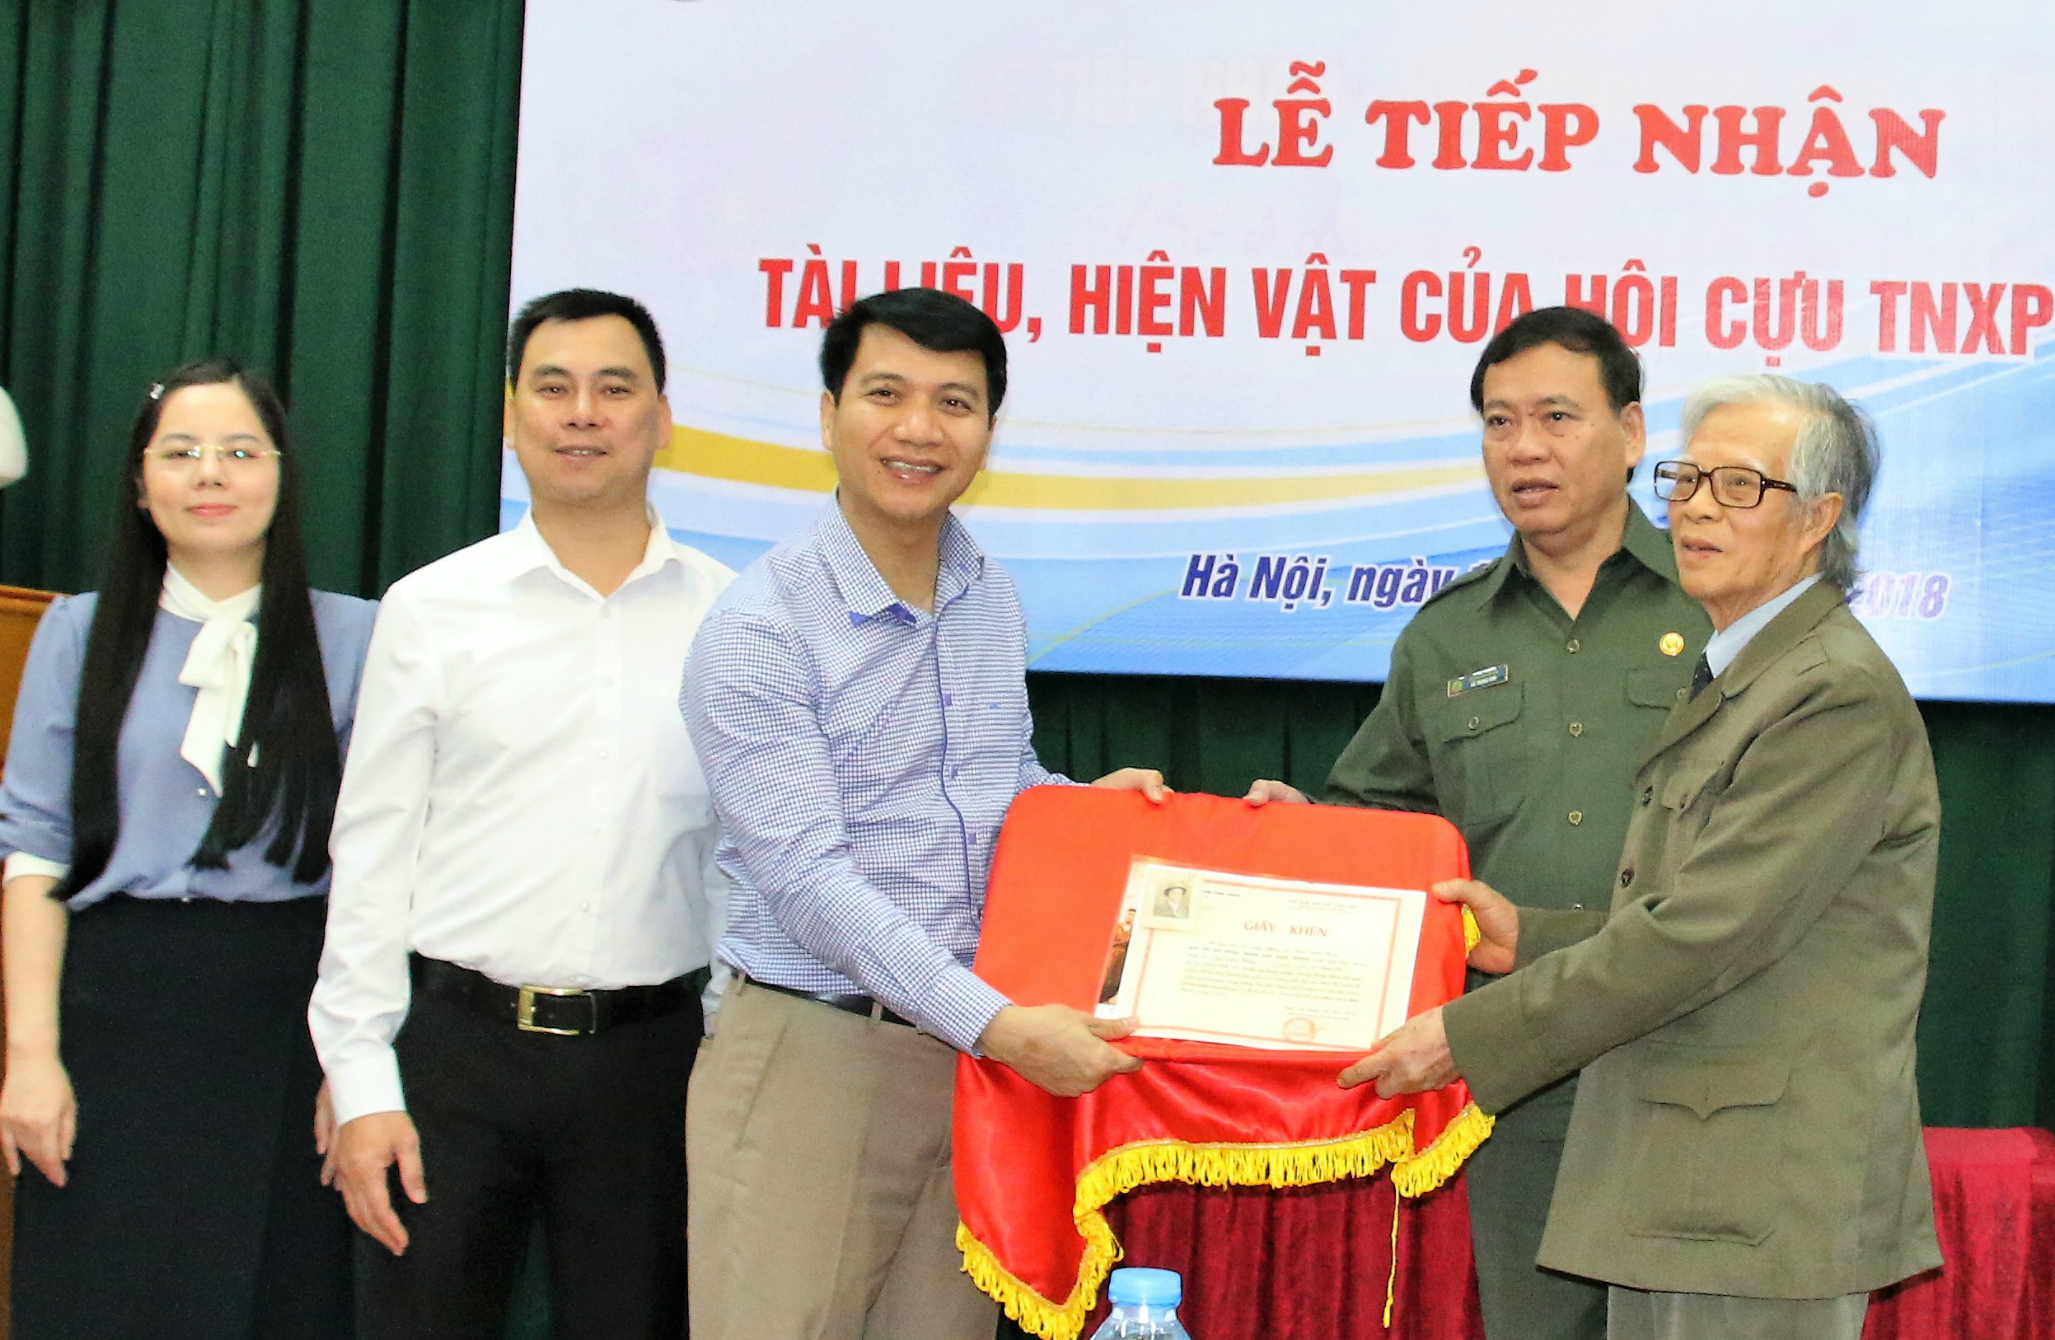 Đồng chí Nguyễn Ngọc Lương đón nhận hiện vật từ các cựu TNXP 